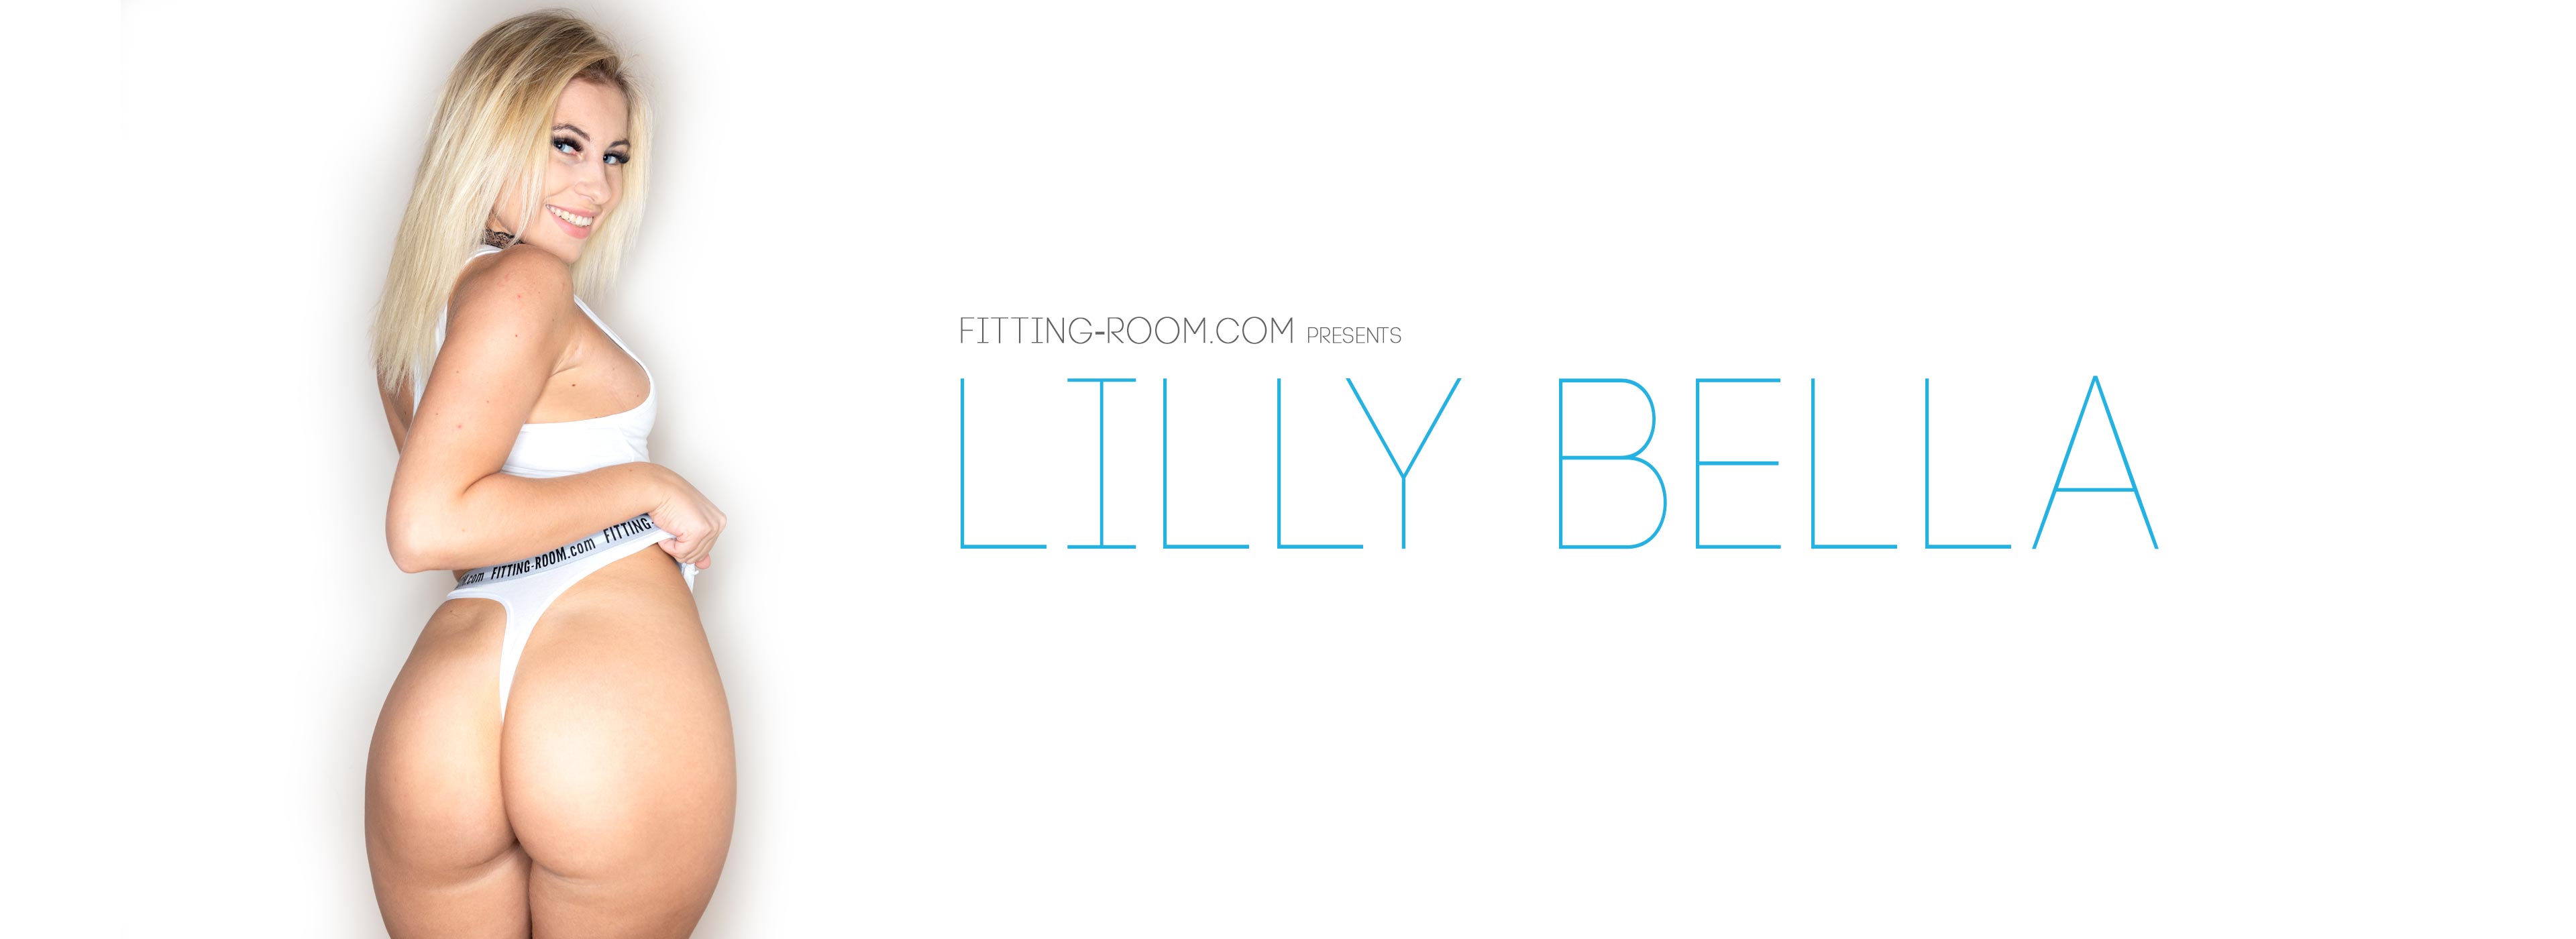 Lilly Bella